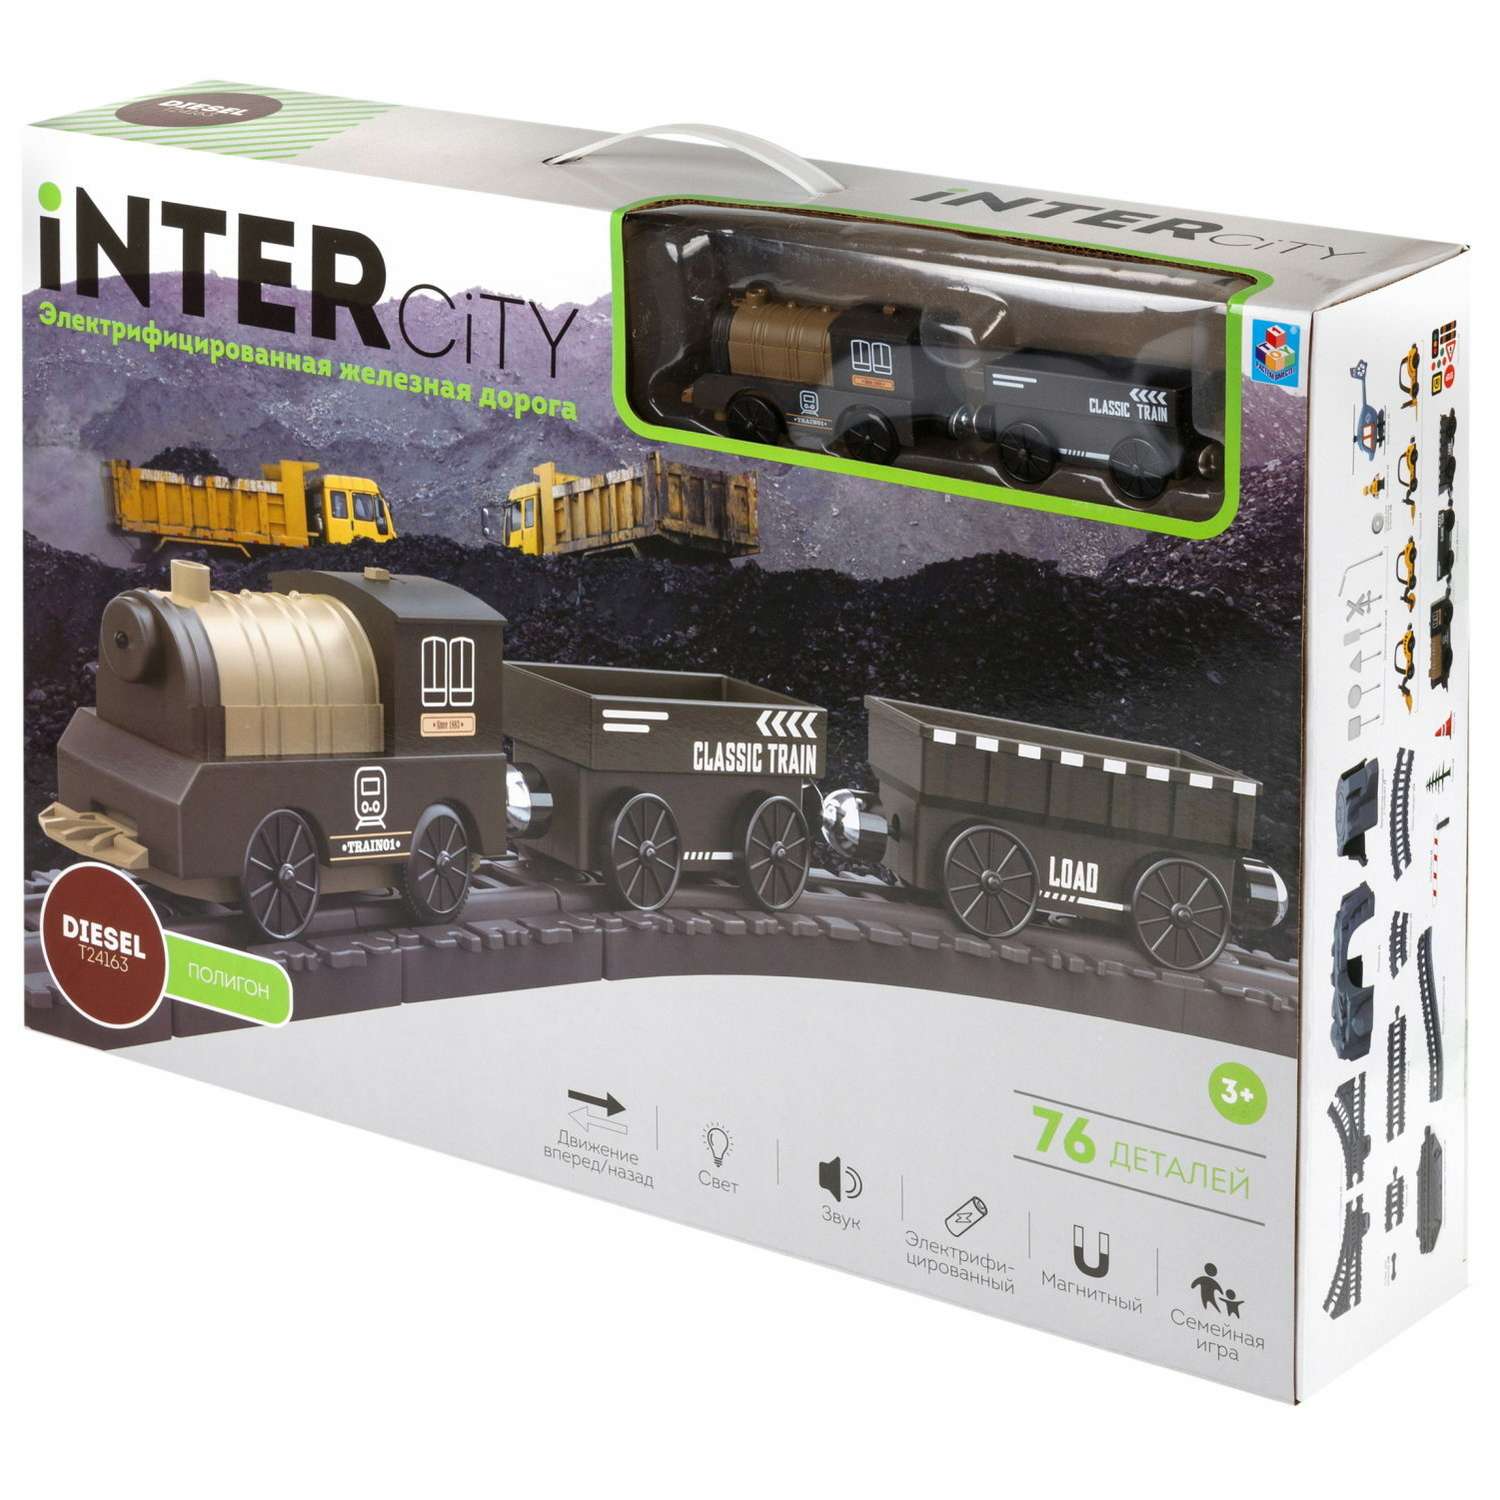 Игровой набор 1TOY InterCity Diesel Железная дорога Полигон 76 деталей Т24163 - фото 40